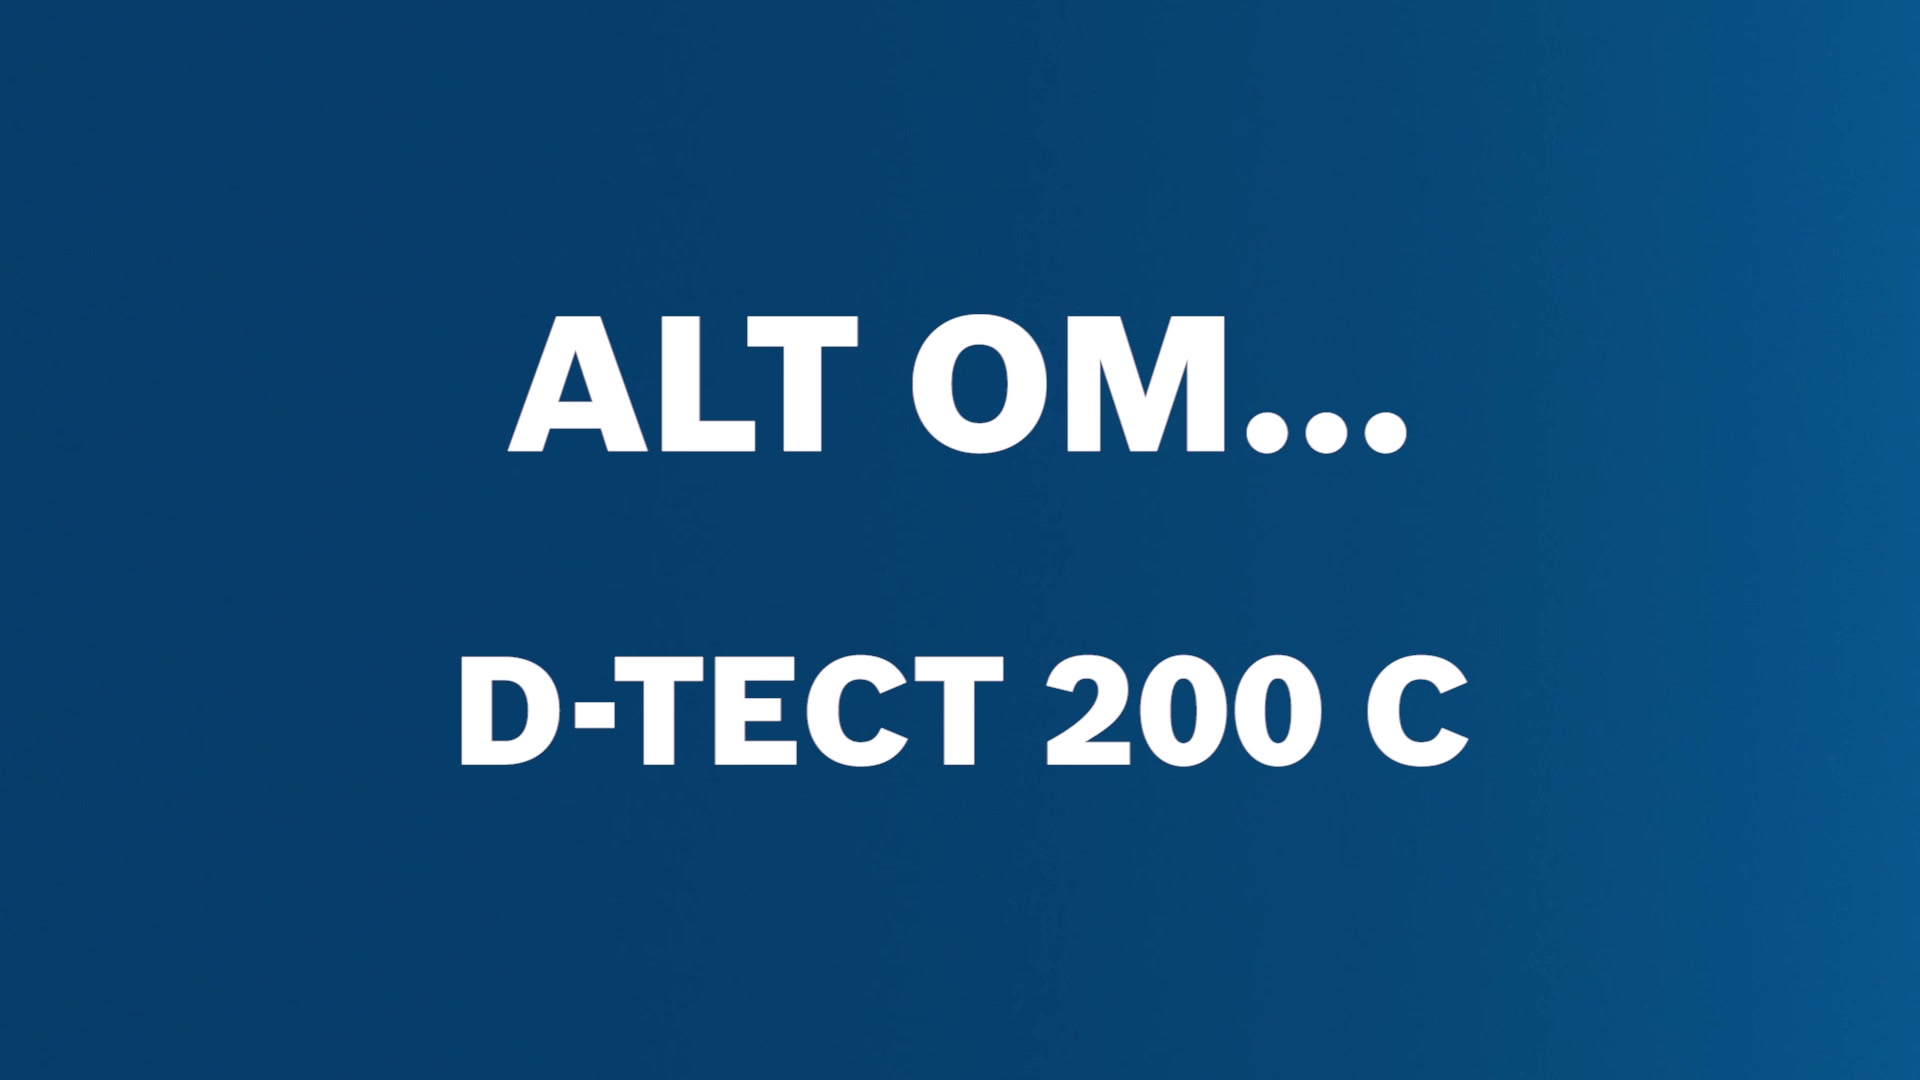 Detektoren D-tect 200 C